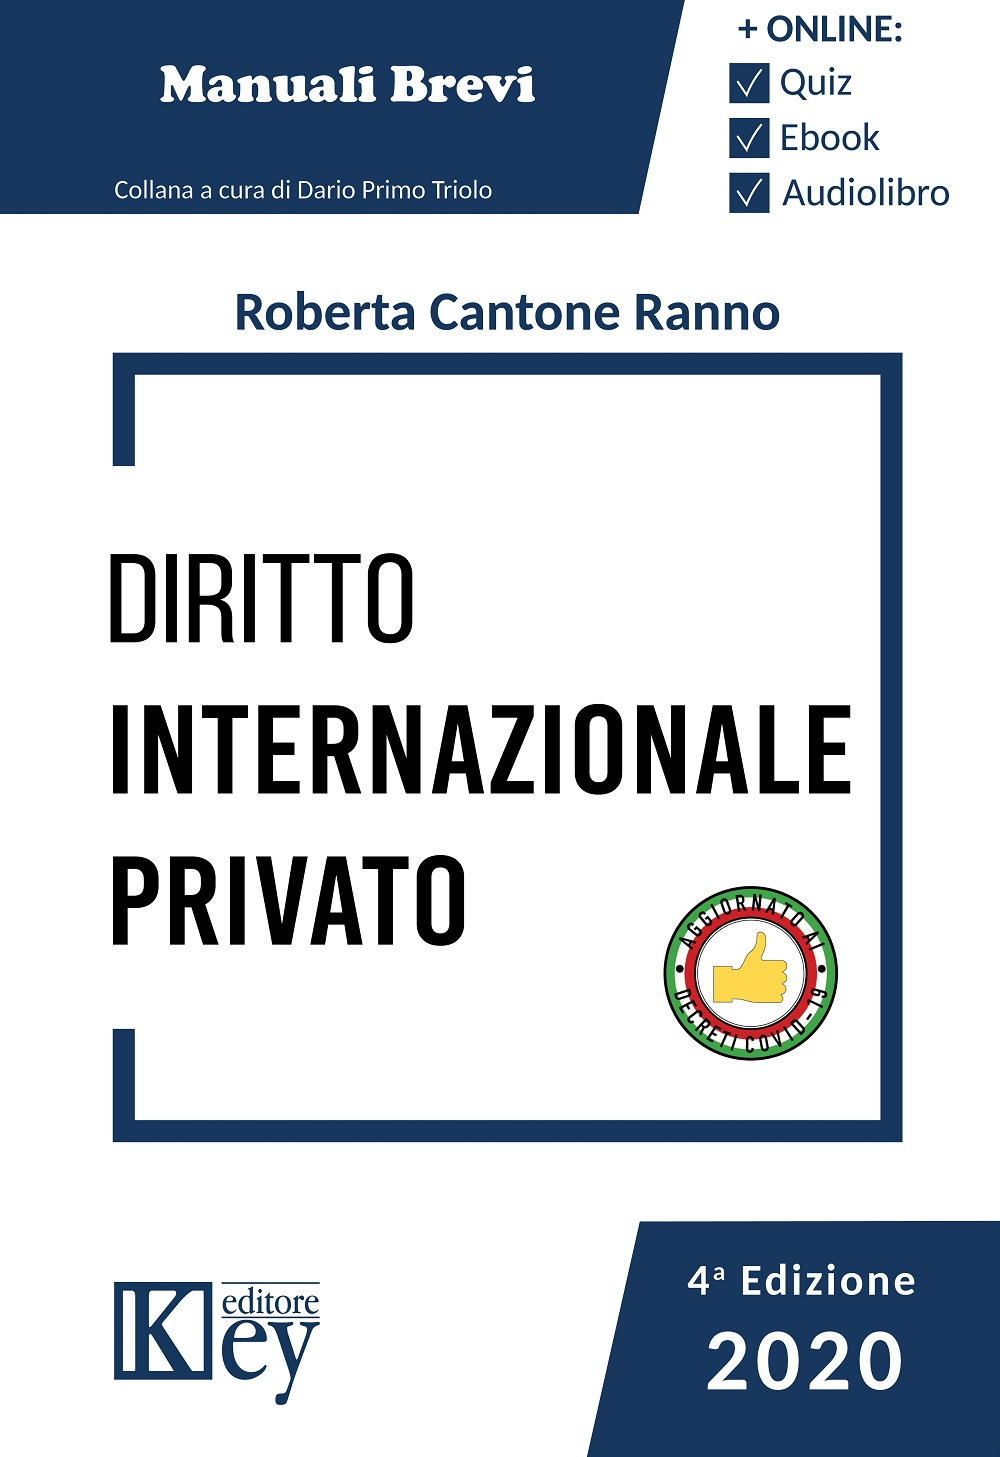 Libri Cantone Ranno Roberta - Diritto Internazionale Privato NUOVO SIGILLATO, EDIZIONE DEL 19/06/2020 SUBITO DISPONIBILE